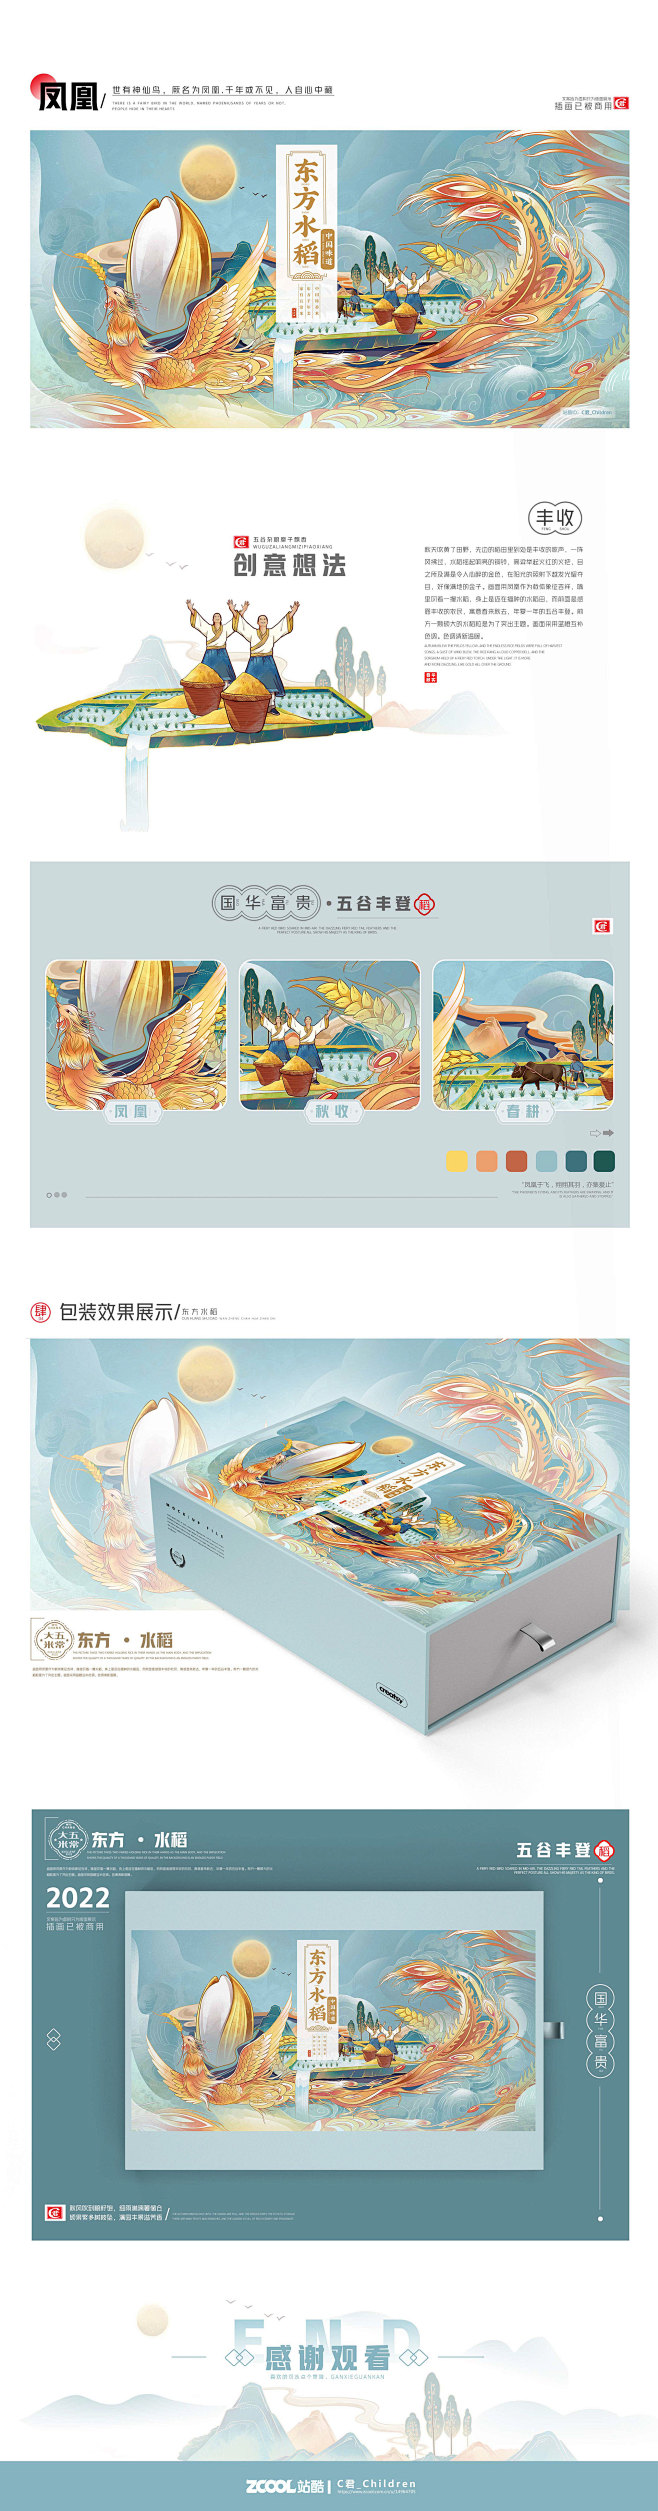 中国风包装插画 on Behance